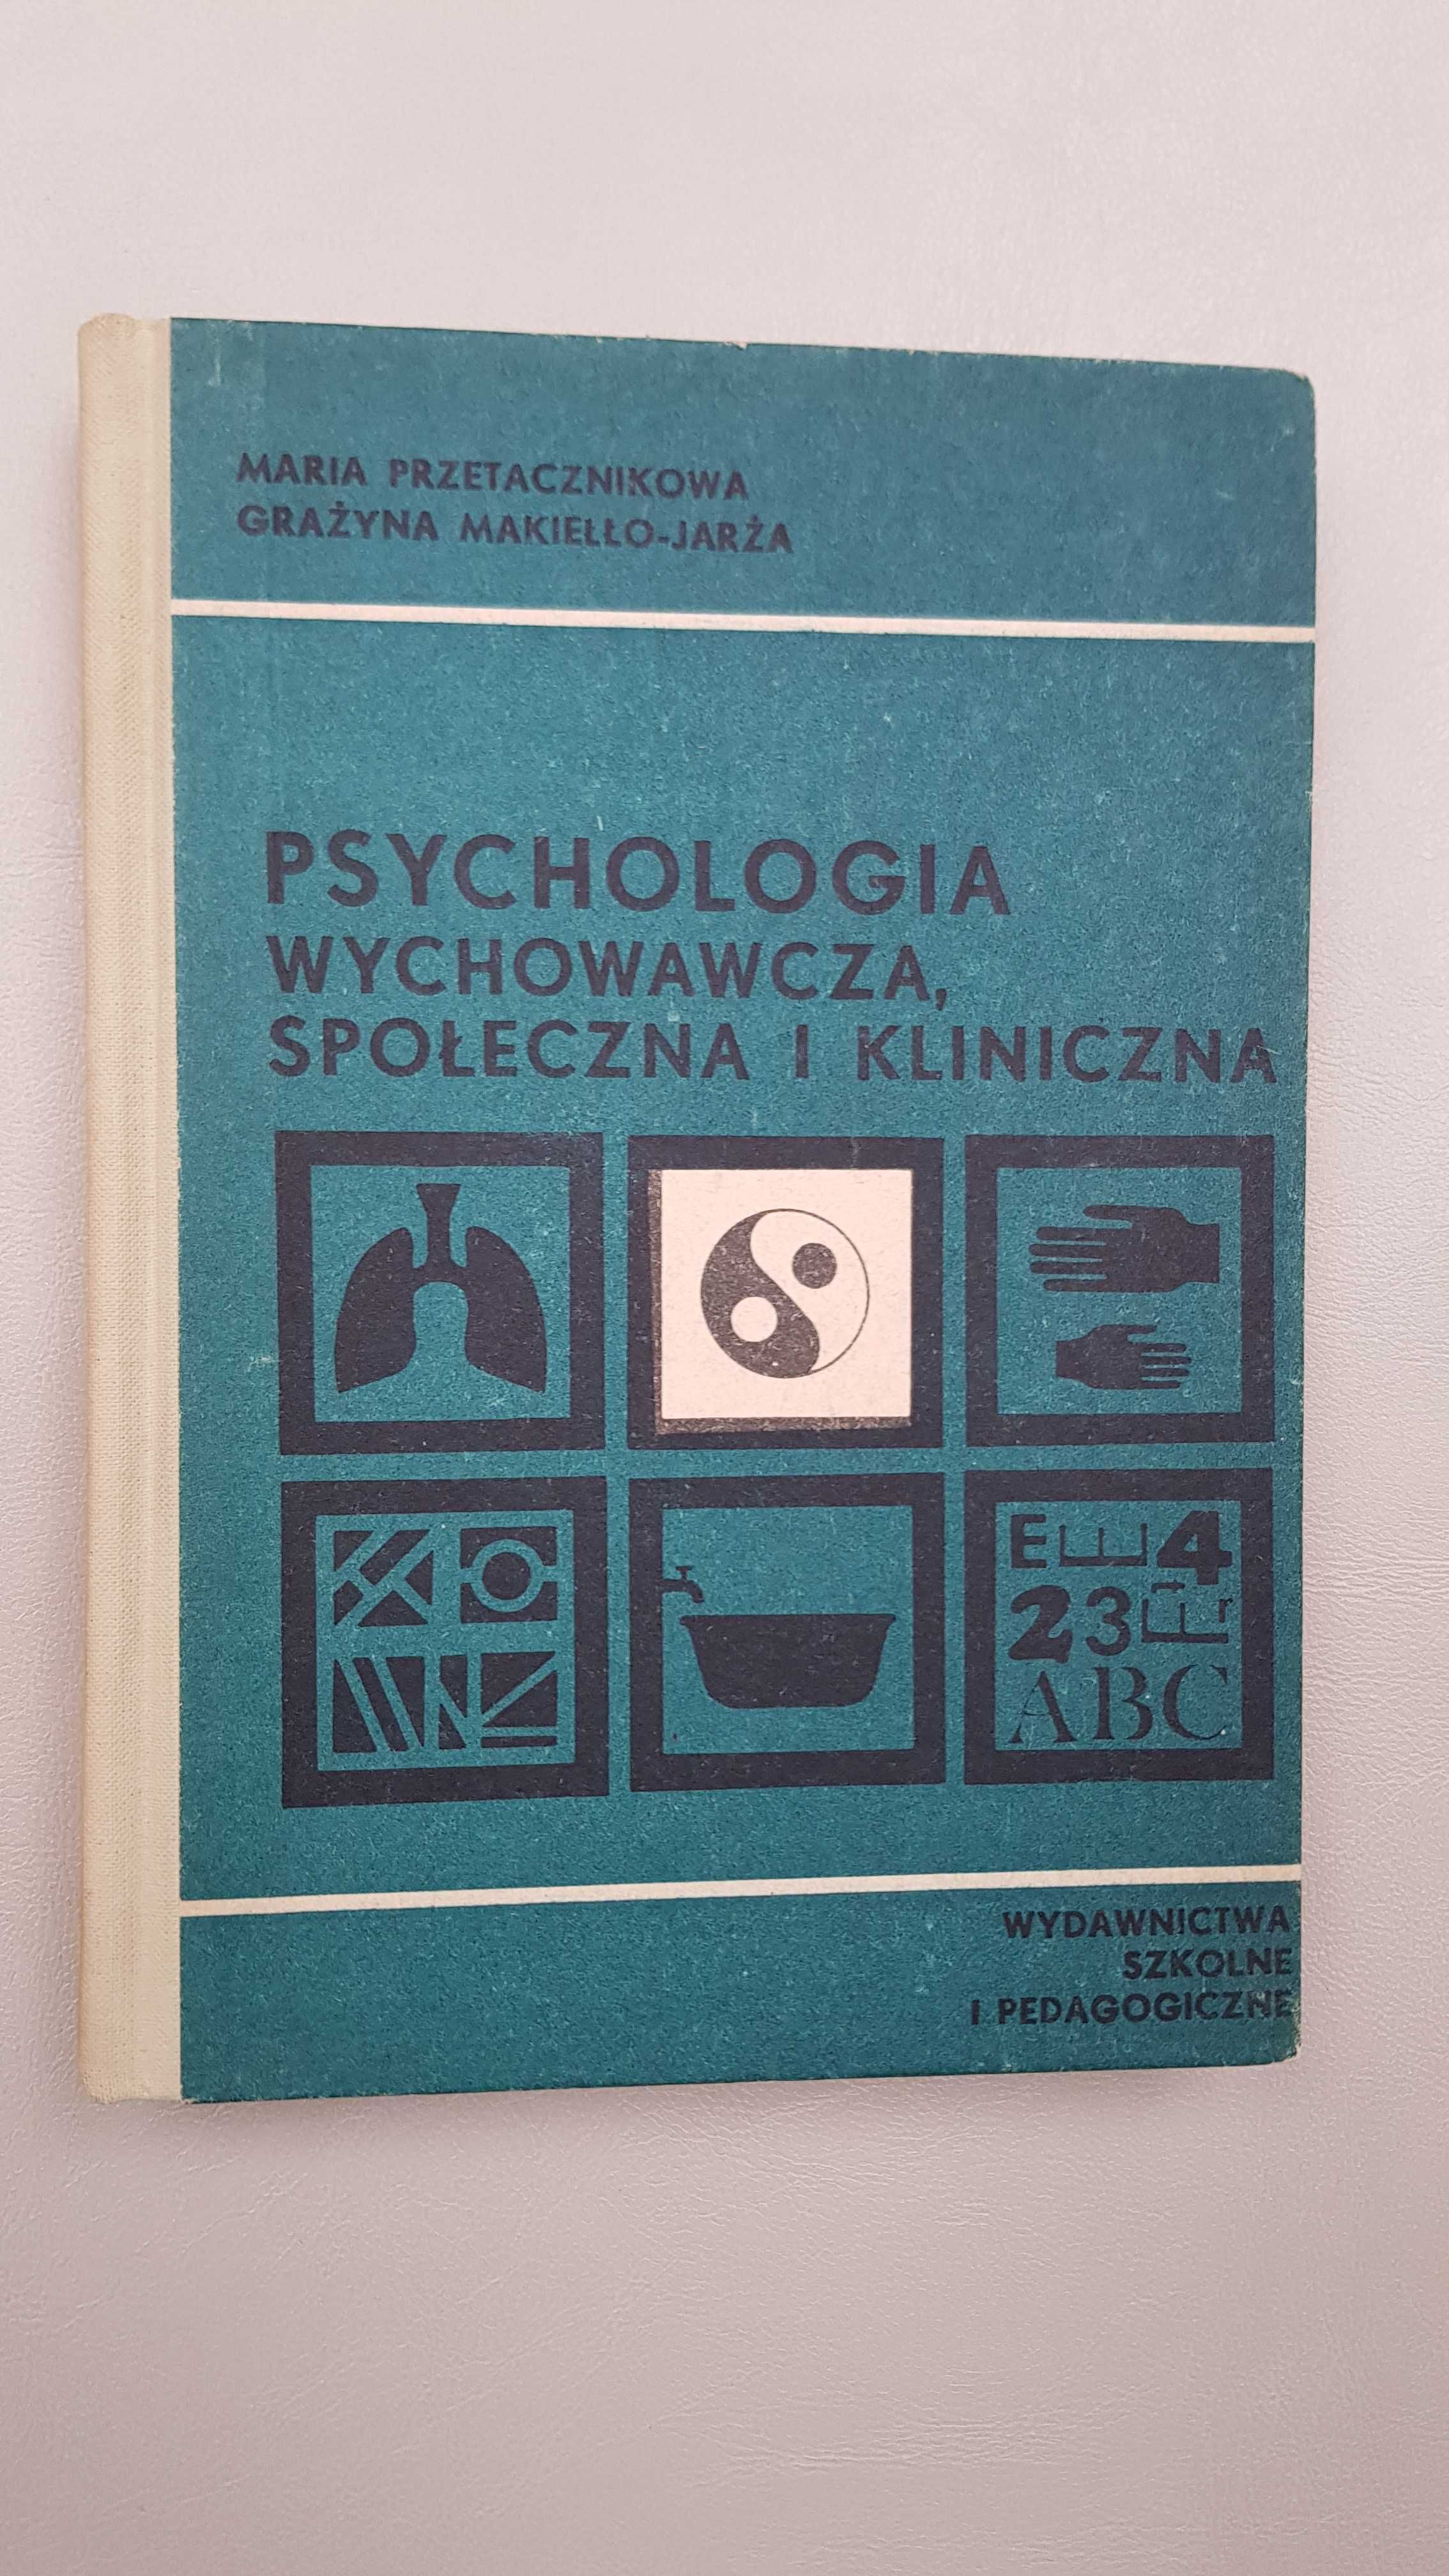 Psychologia wychowawcza, społeczna i kliniczna M. Przetacznikowa